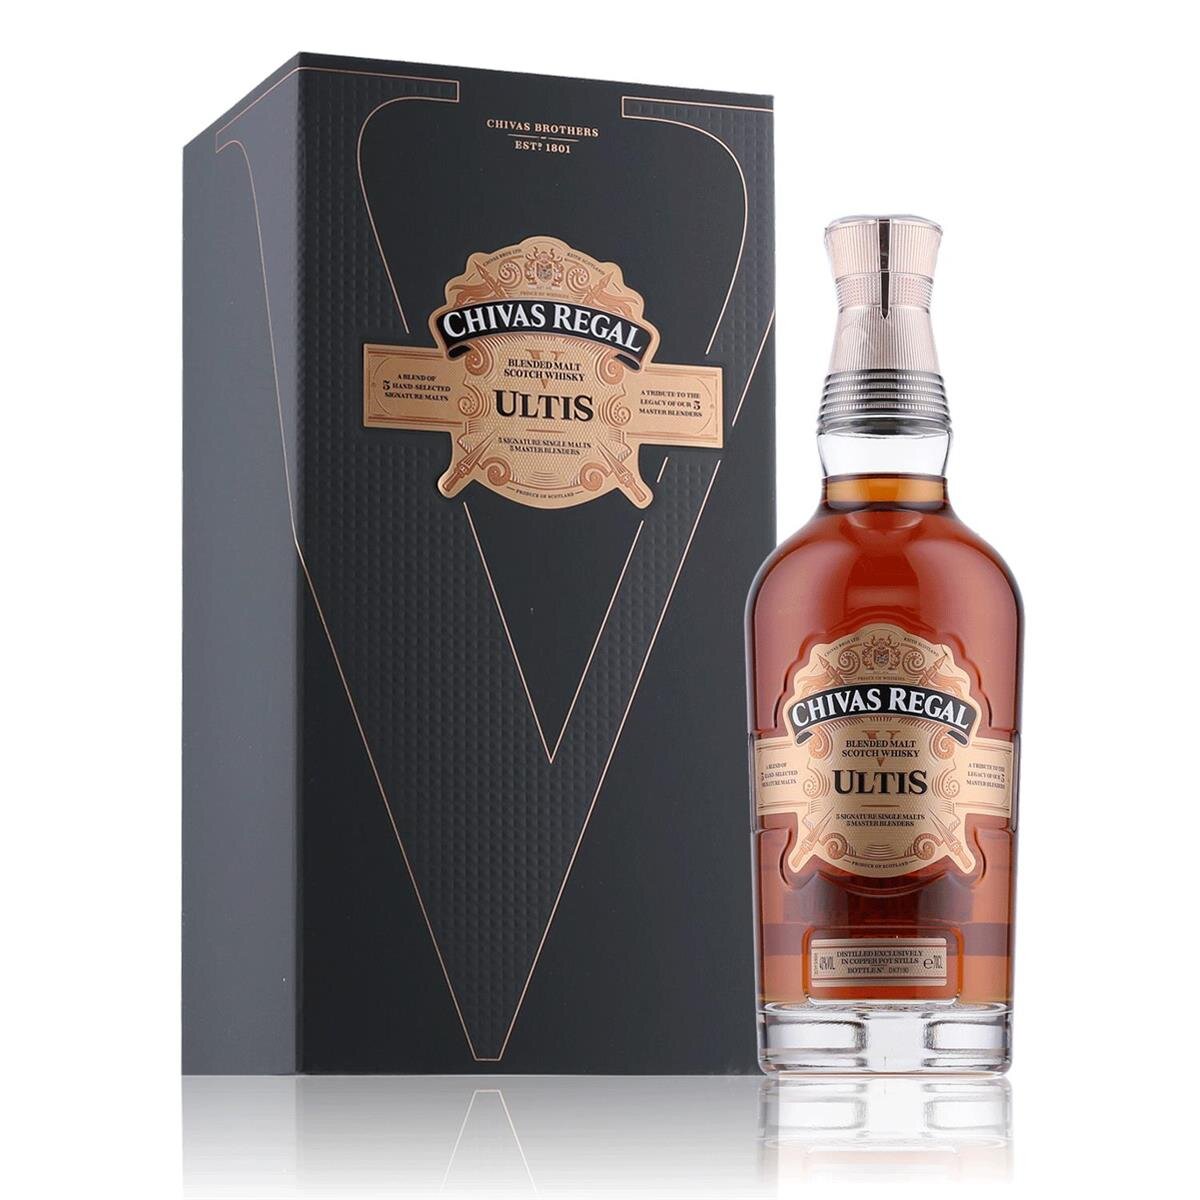 Chivas Regal 20 Years Ultis Whisky 40% Vol. 0,7l in Geschenkbox, 128,